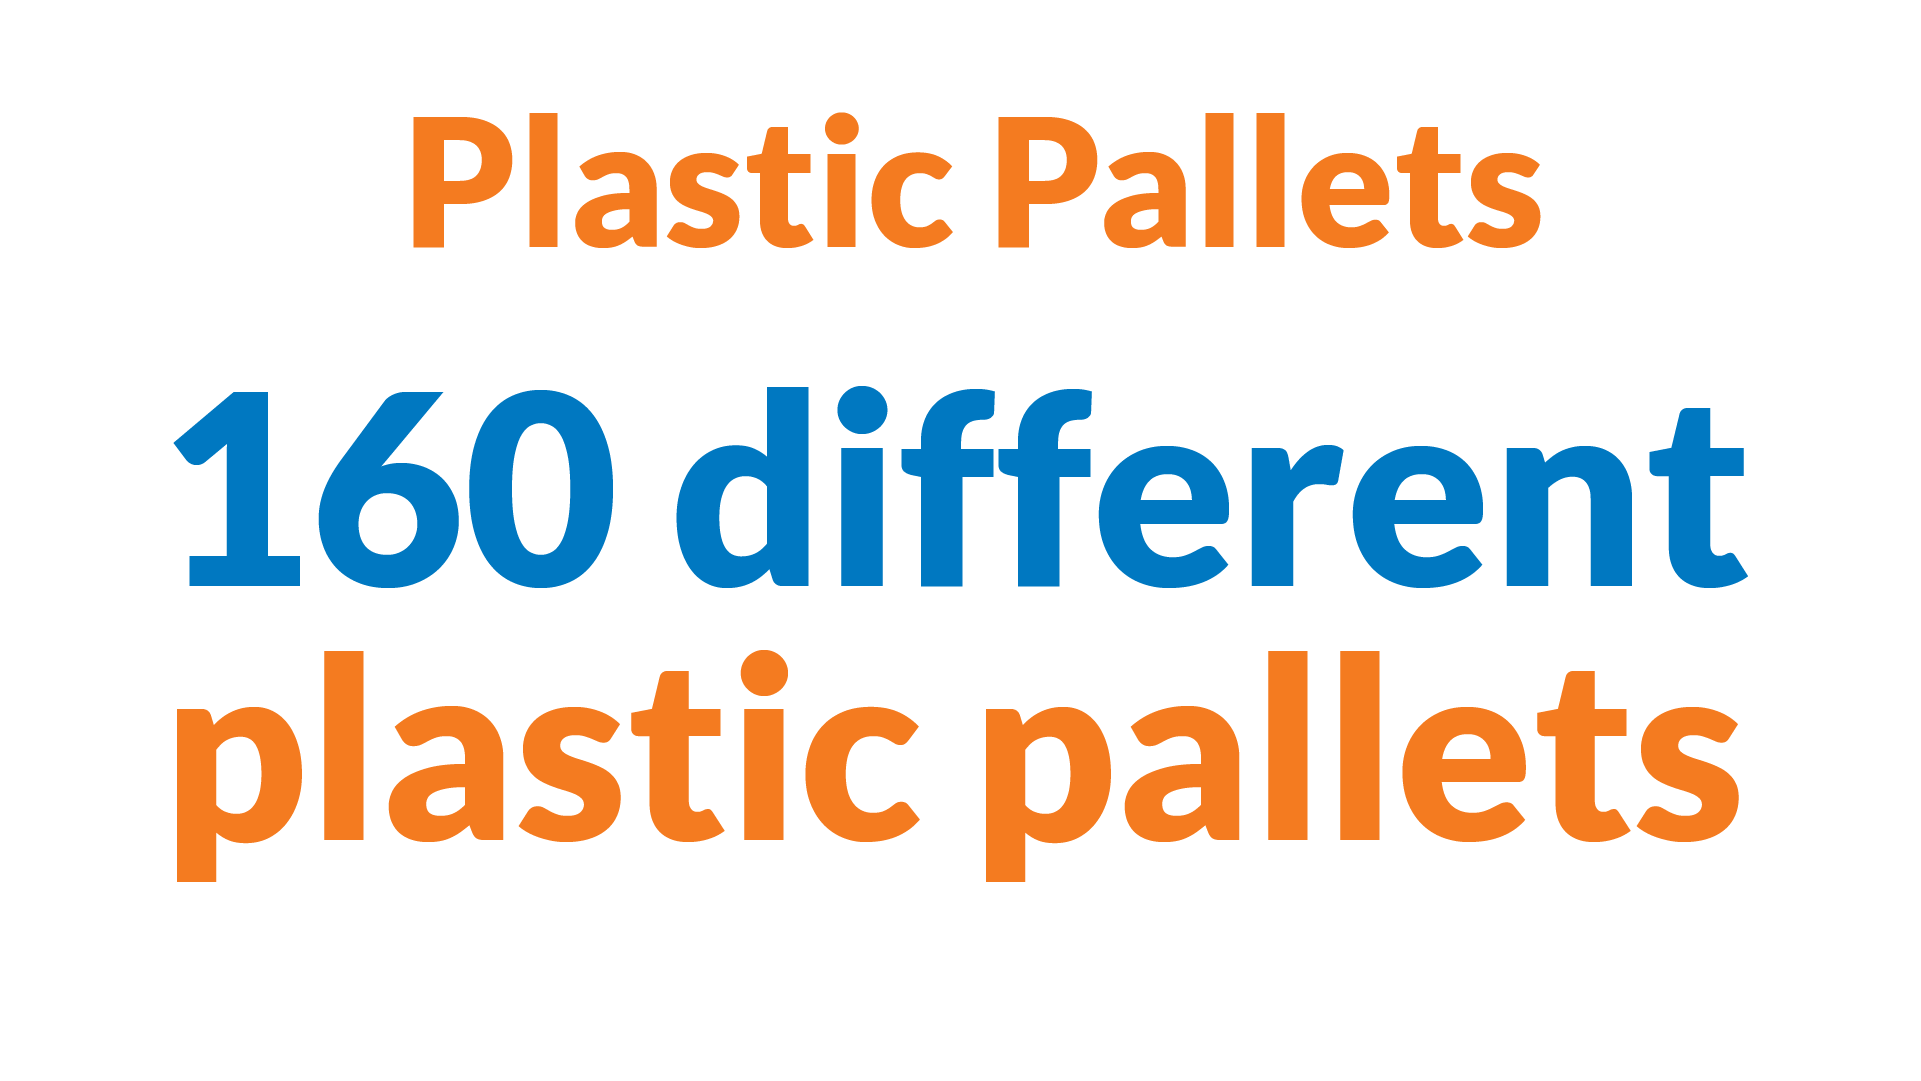 Plastic Pallets: 160 different plastic pallets